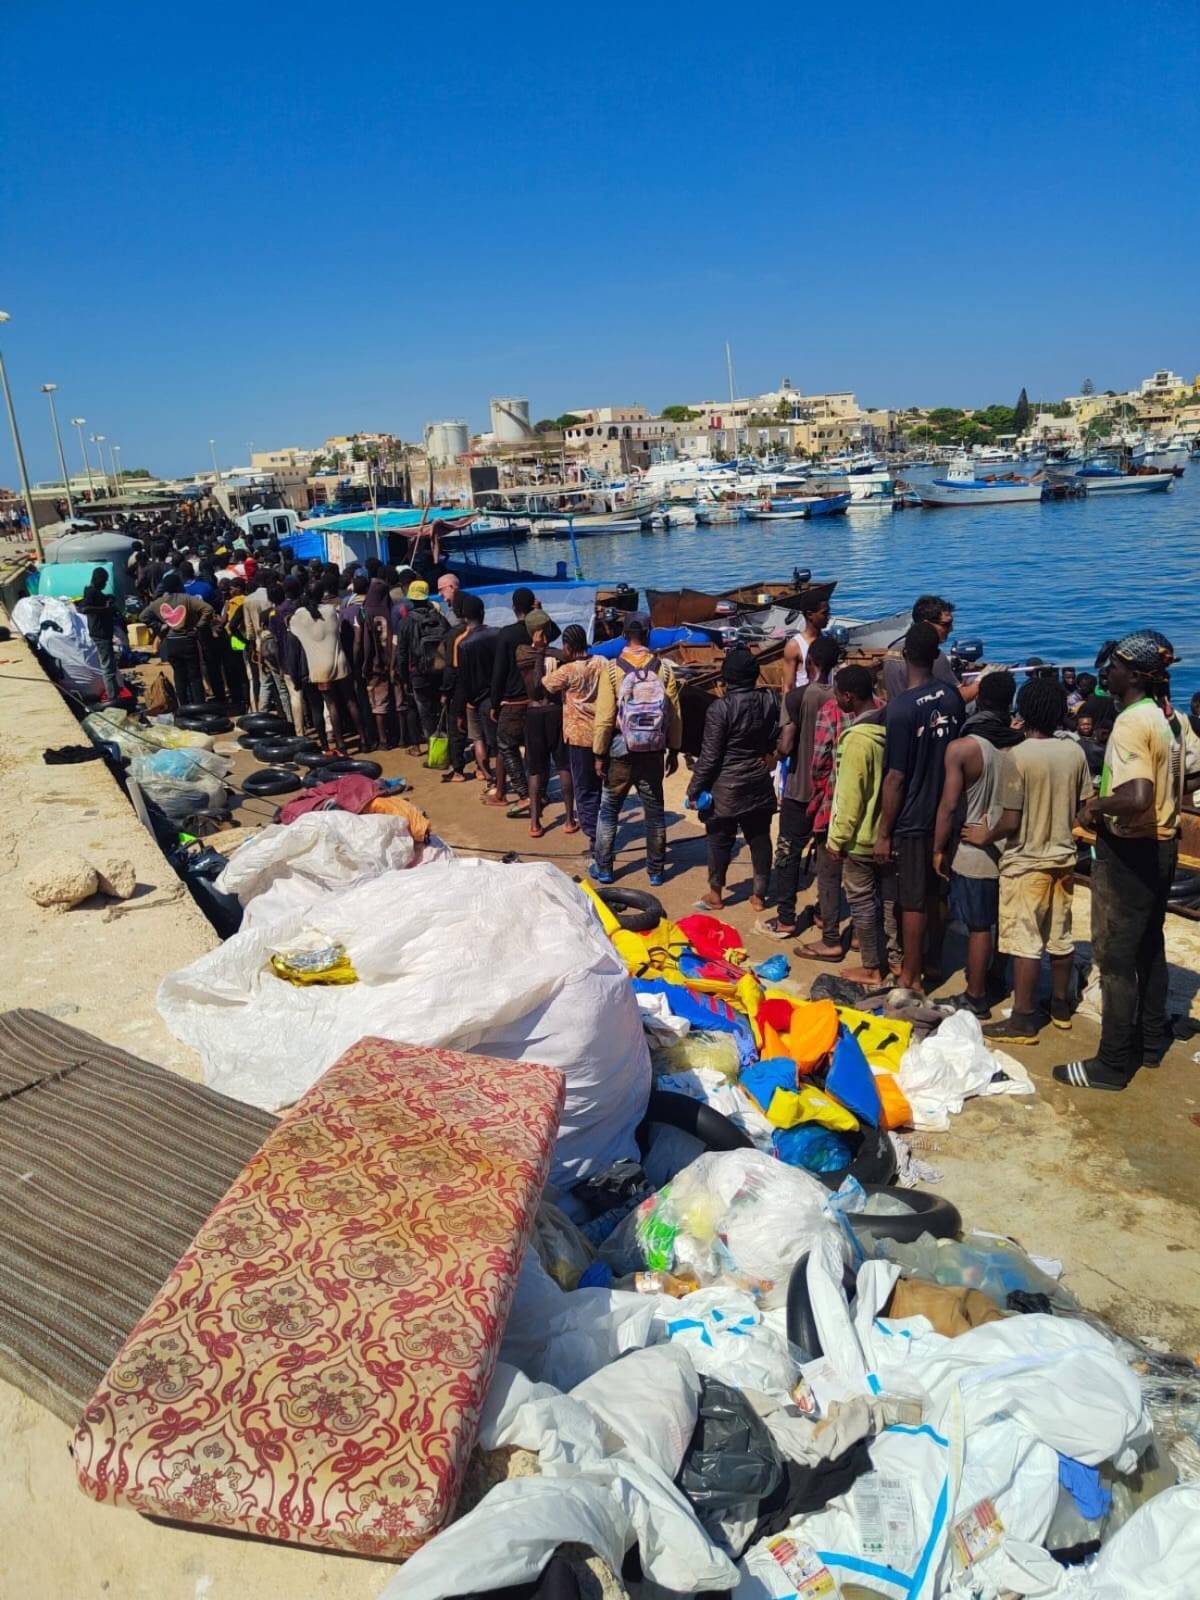 "Sembra un'invasione". Oltre 6mila migranti nell'hotspot di Lampedusa